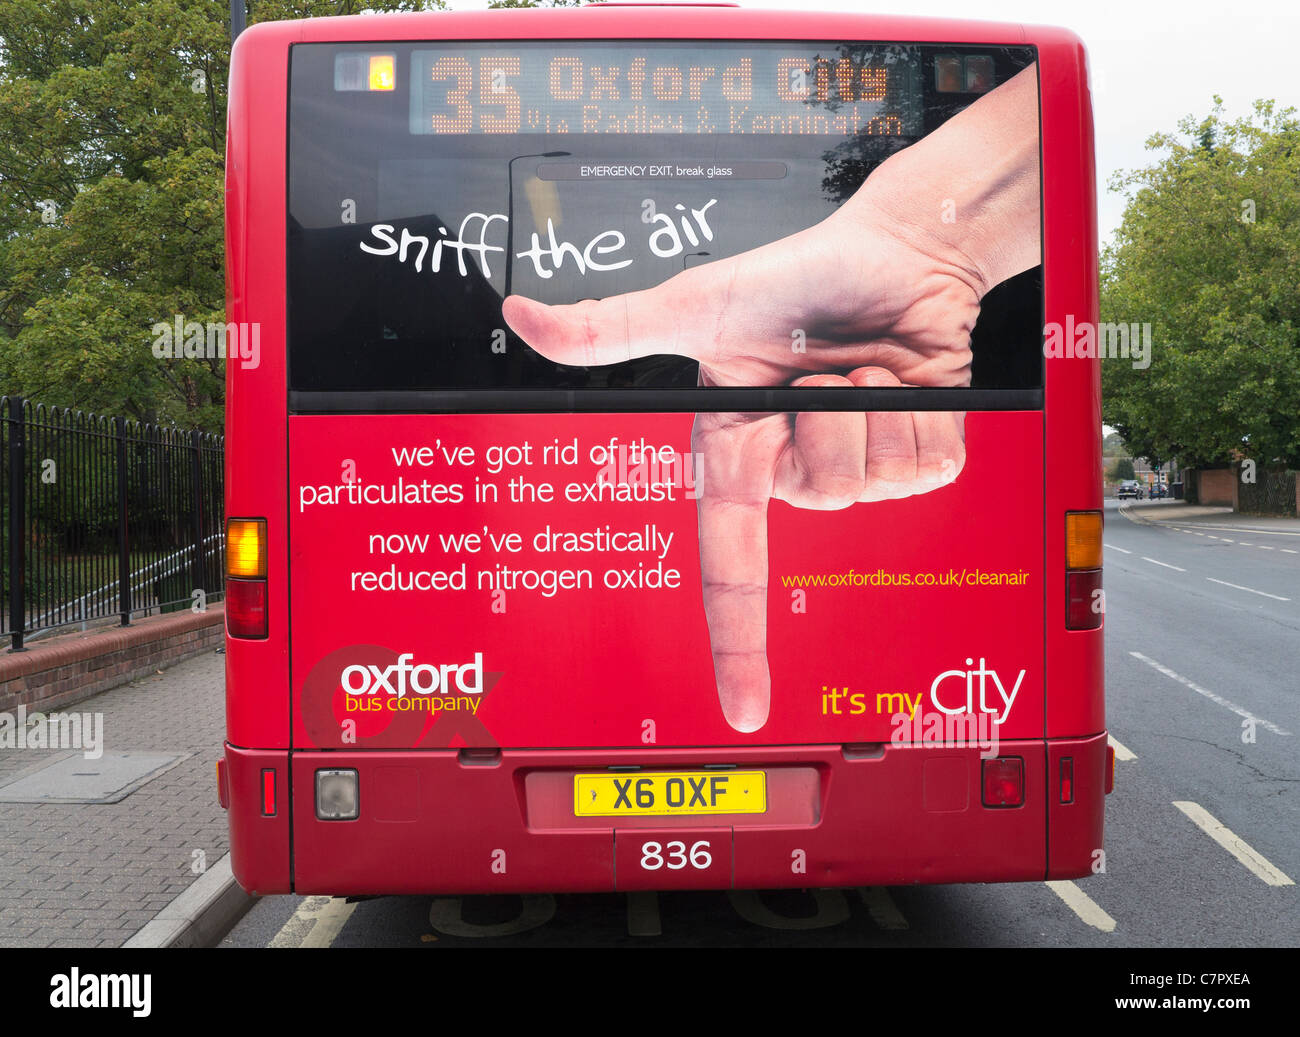 Oxford clean air bus 2 Stock Photo